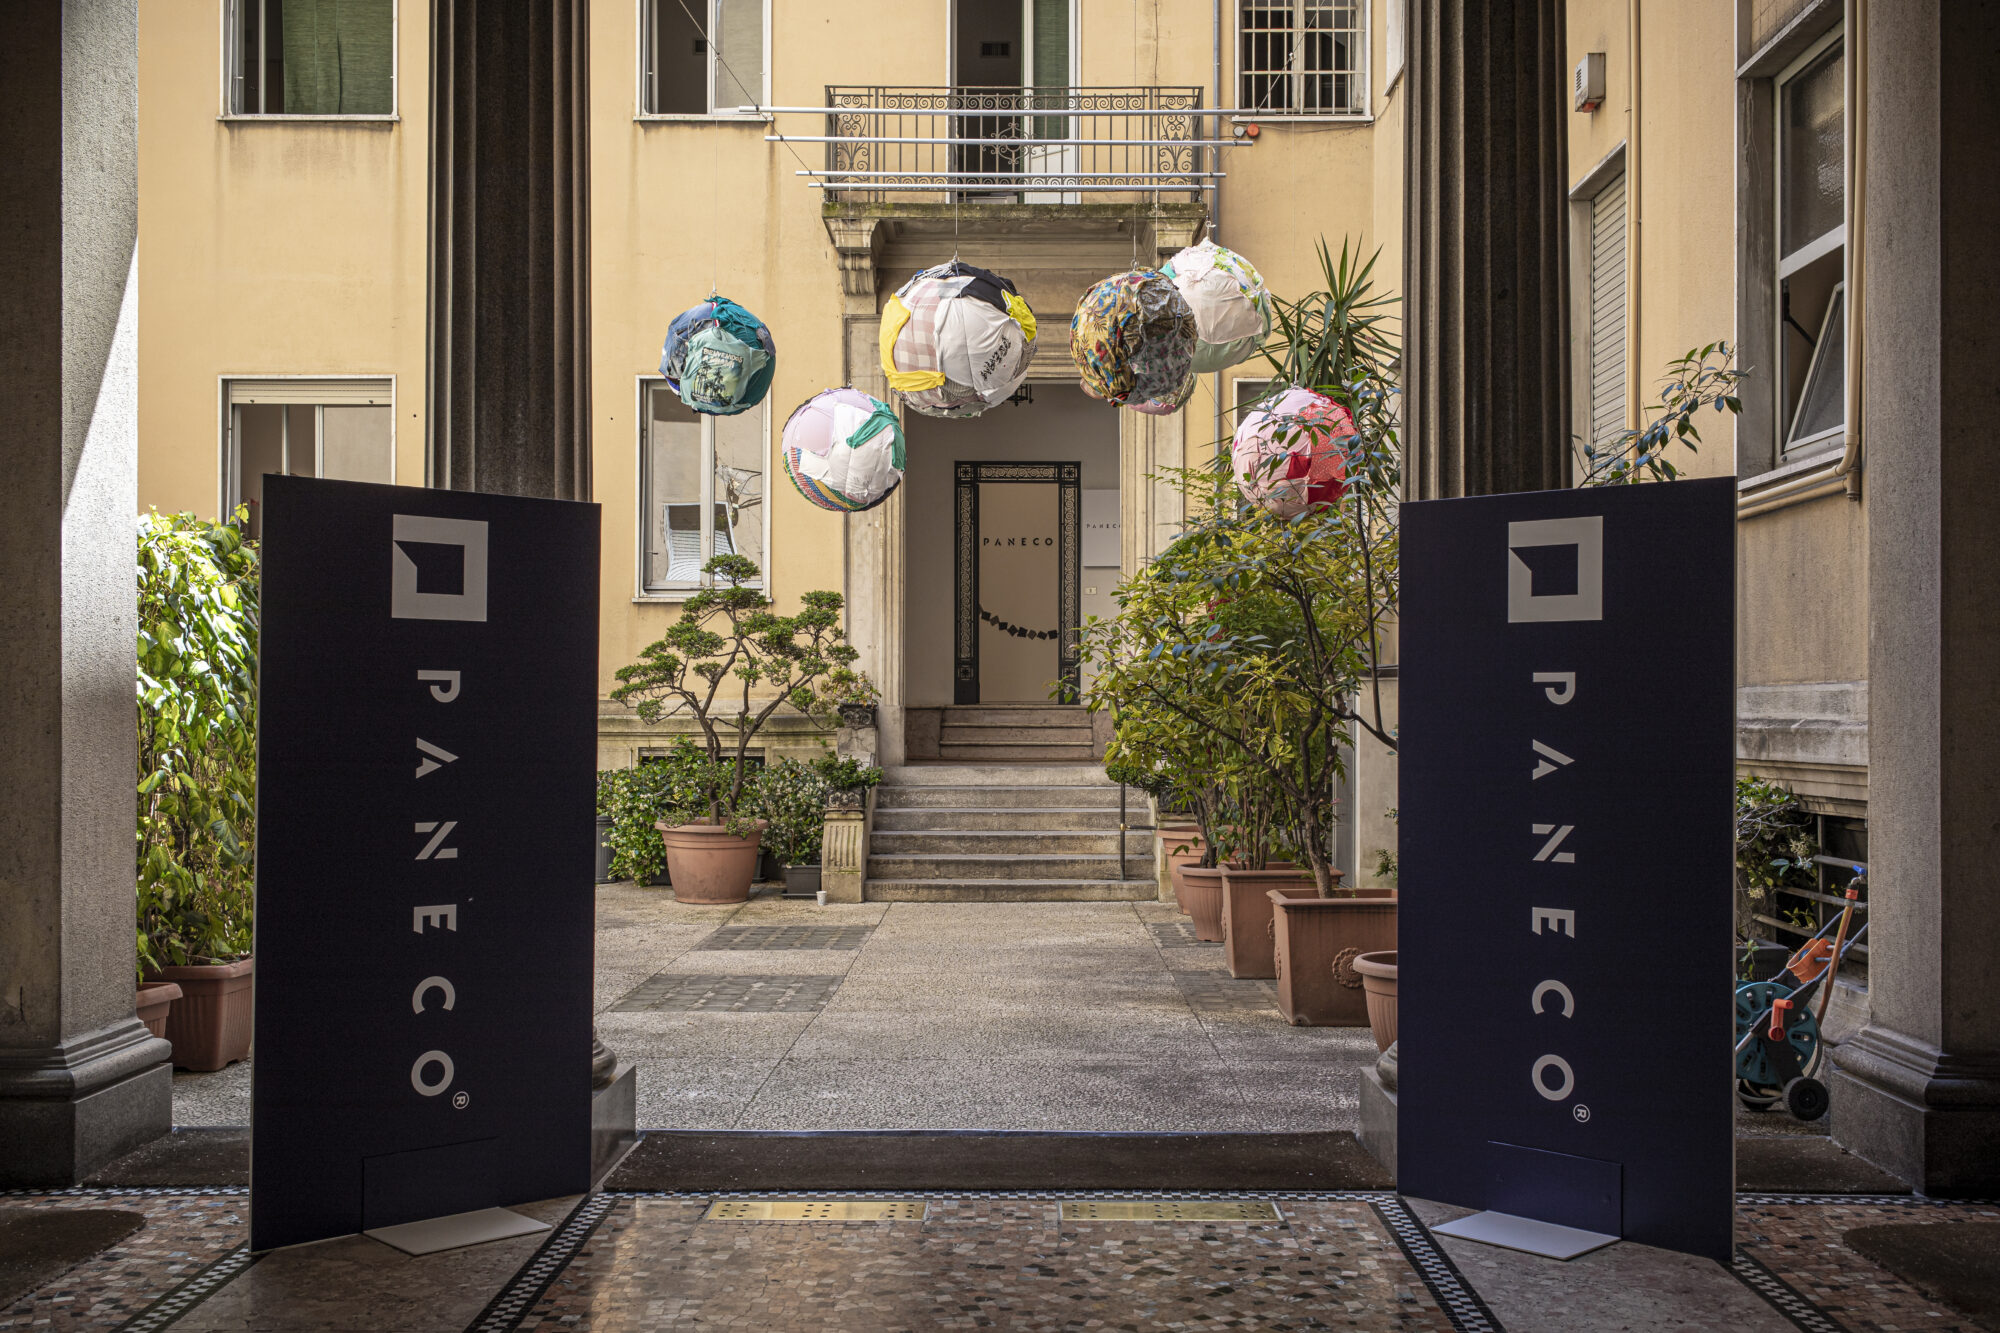 PANECO Milan design week 2022